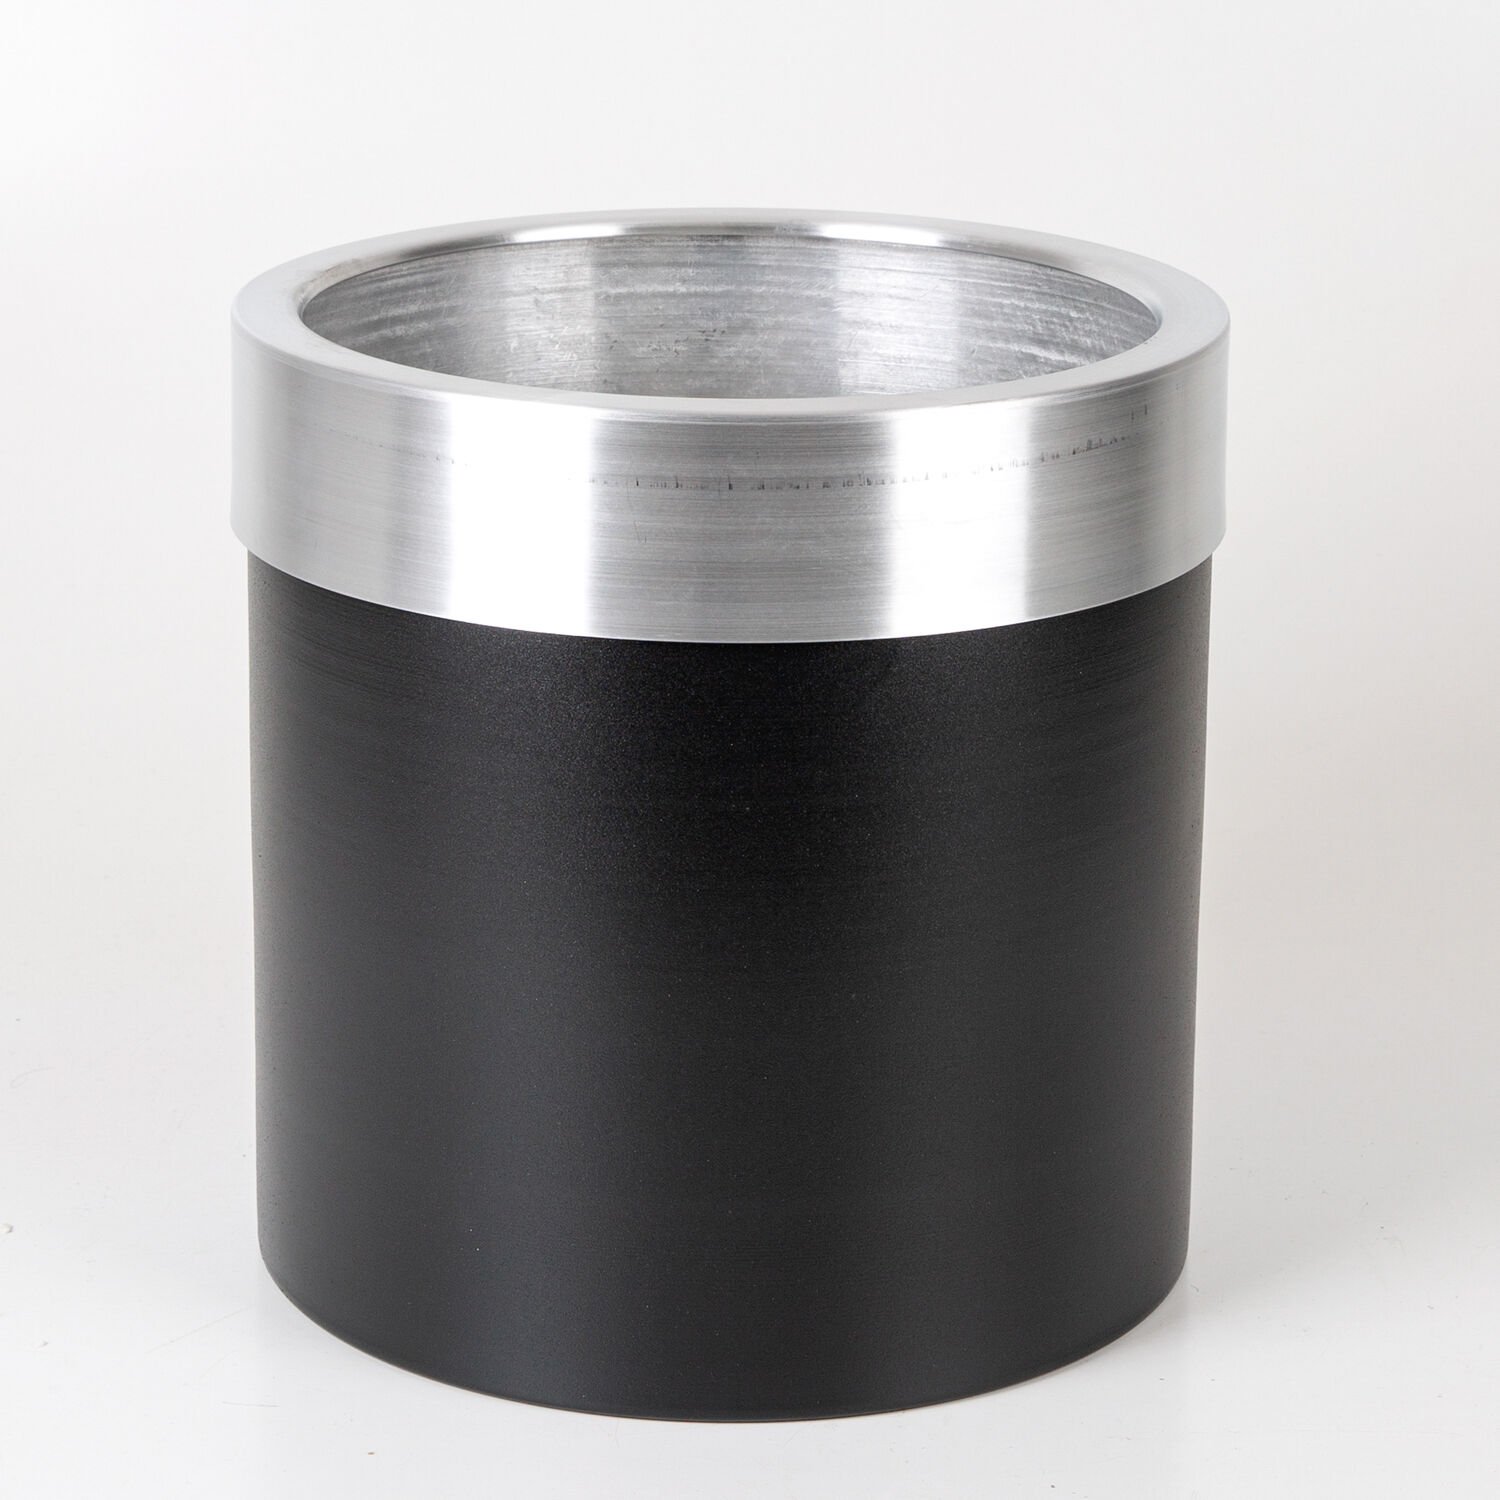 Silindir Alüminyum Saksı Çemberli Siyah-Gümüş ( Ebat 35X35 Cm.)